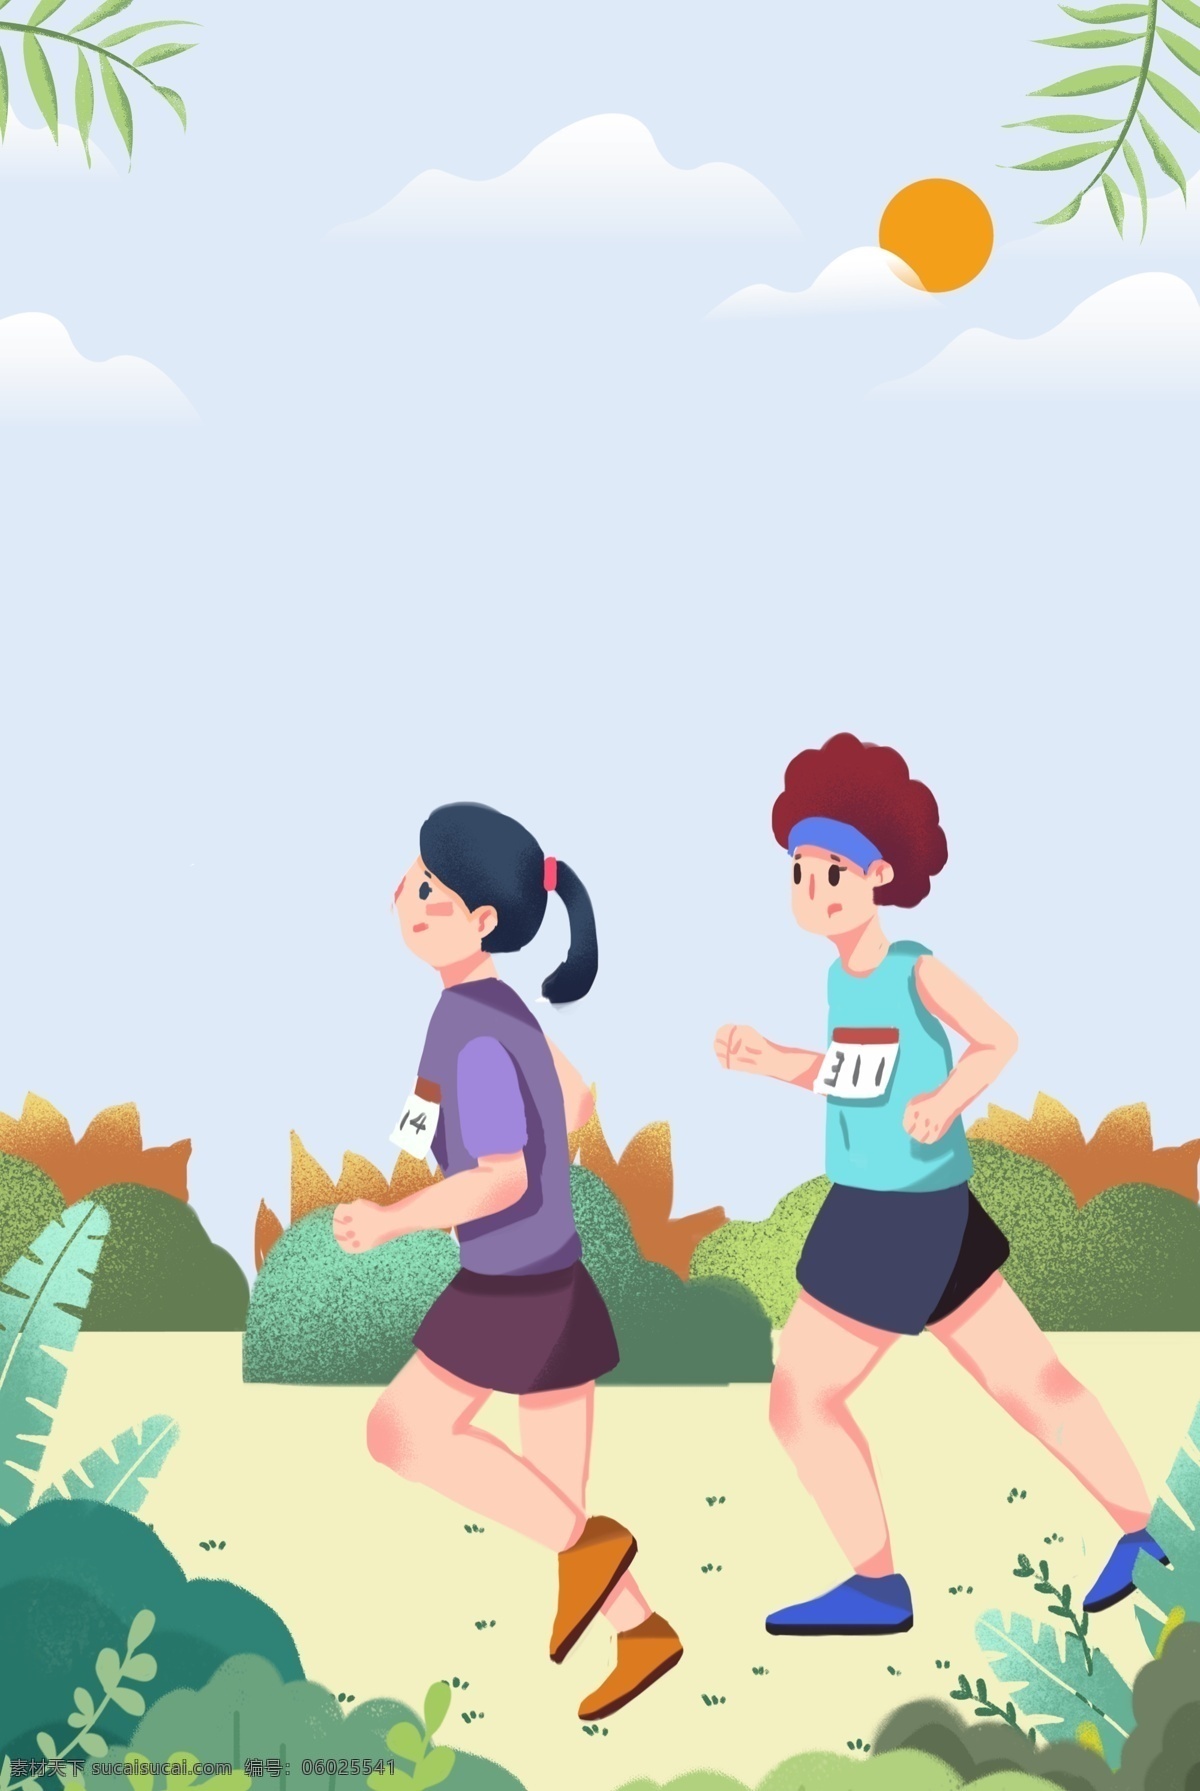 健康 运动 跑步 背景 全民运动 健身 太阳 云朵 草丛 树叶 简约 手绘